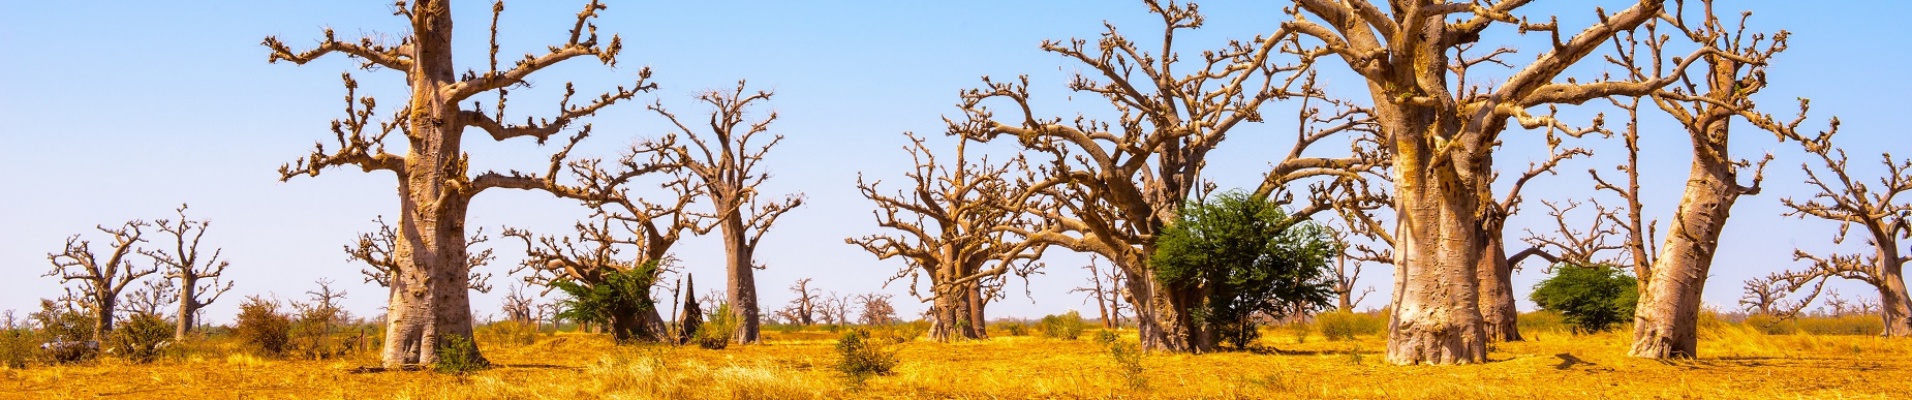 baobabs dans la brousse sénégalaise